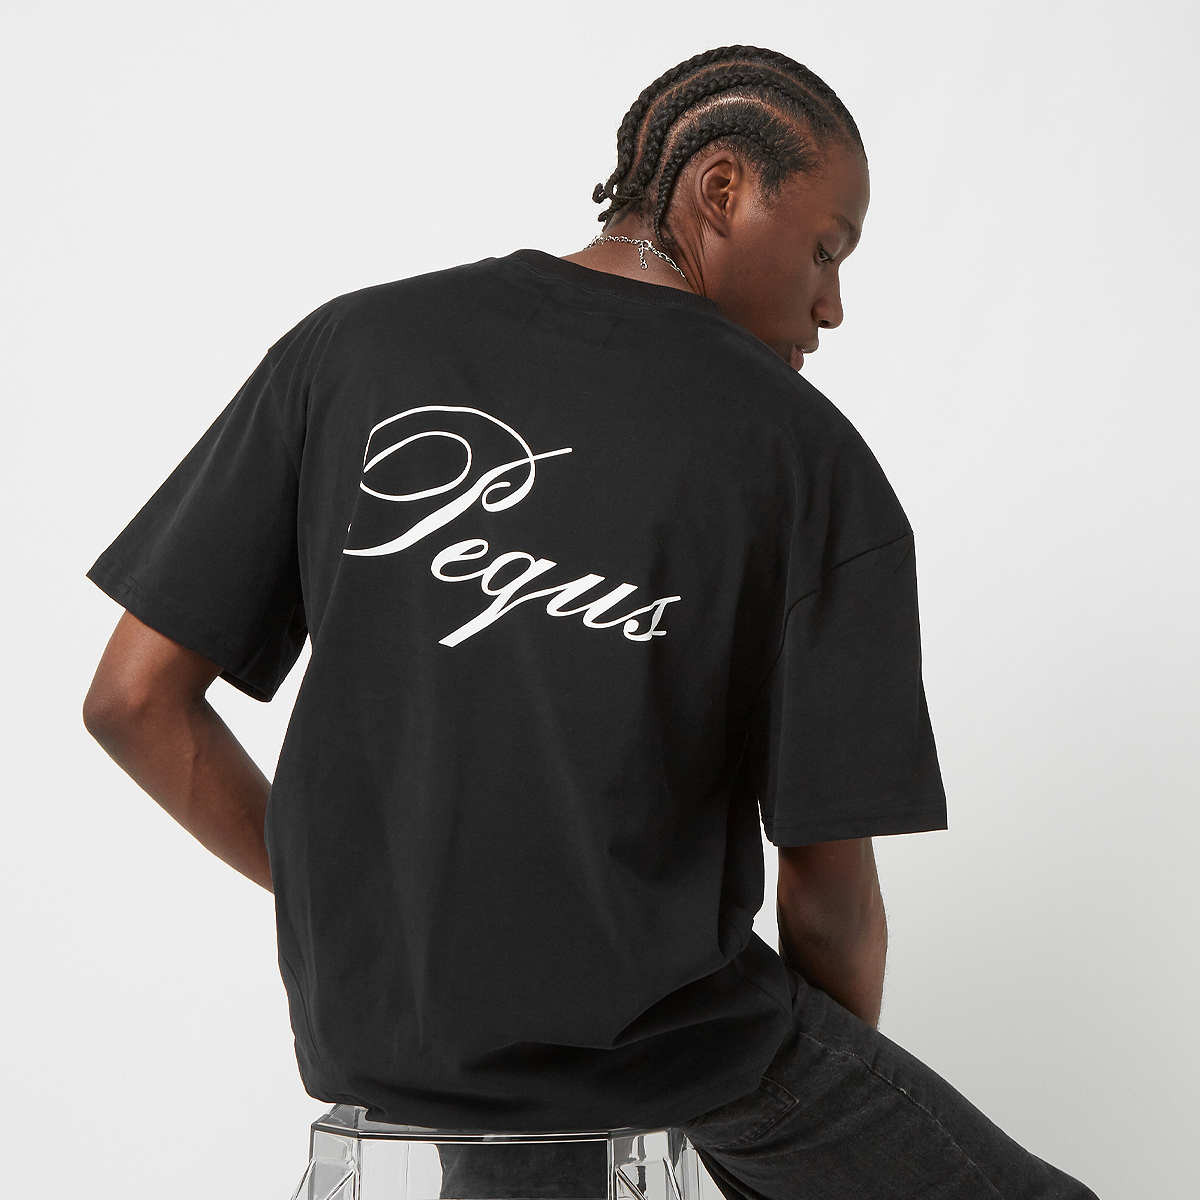 Pequs Handwritten Logo T-shirt T-shirts Kleding Black maat: L beschikbare maaten:XL S L